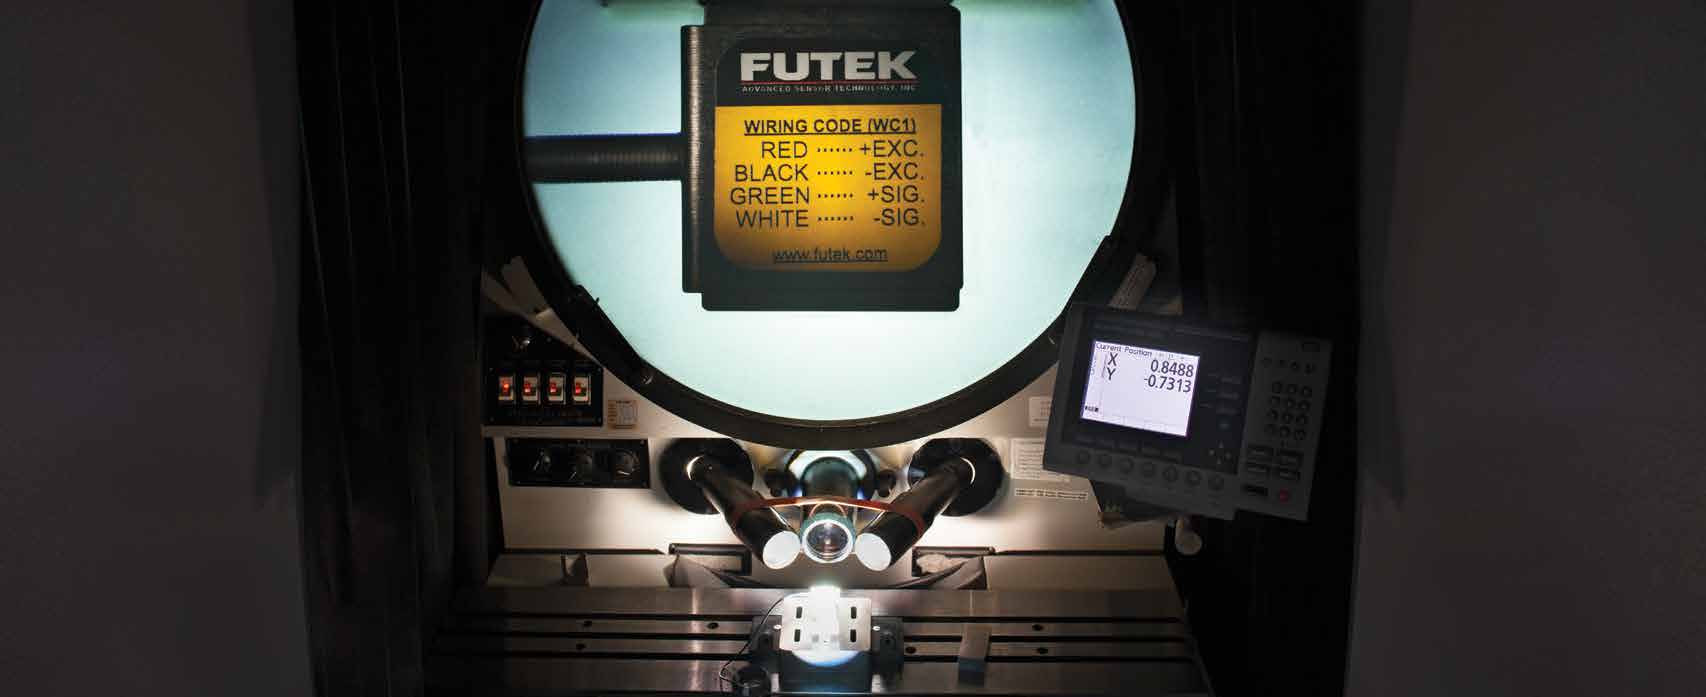 Yük Hücreleri S tipi Mini (LSB200) kalite kontrolünden geçiyor FUTEK 25 yıldır yük hücresi ve kuvvet sensörü tasarımı ve üretimi yapmaktadır.